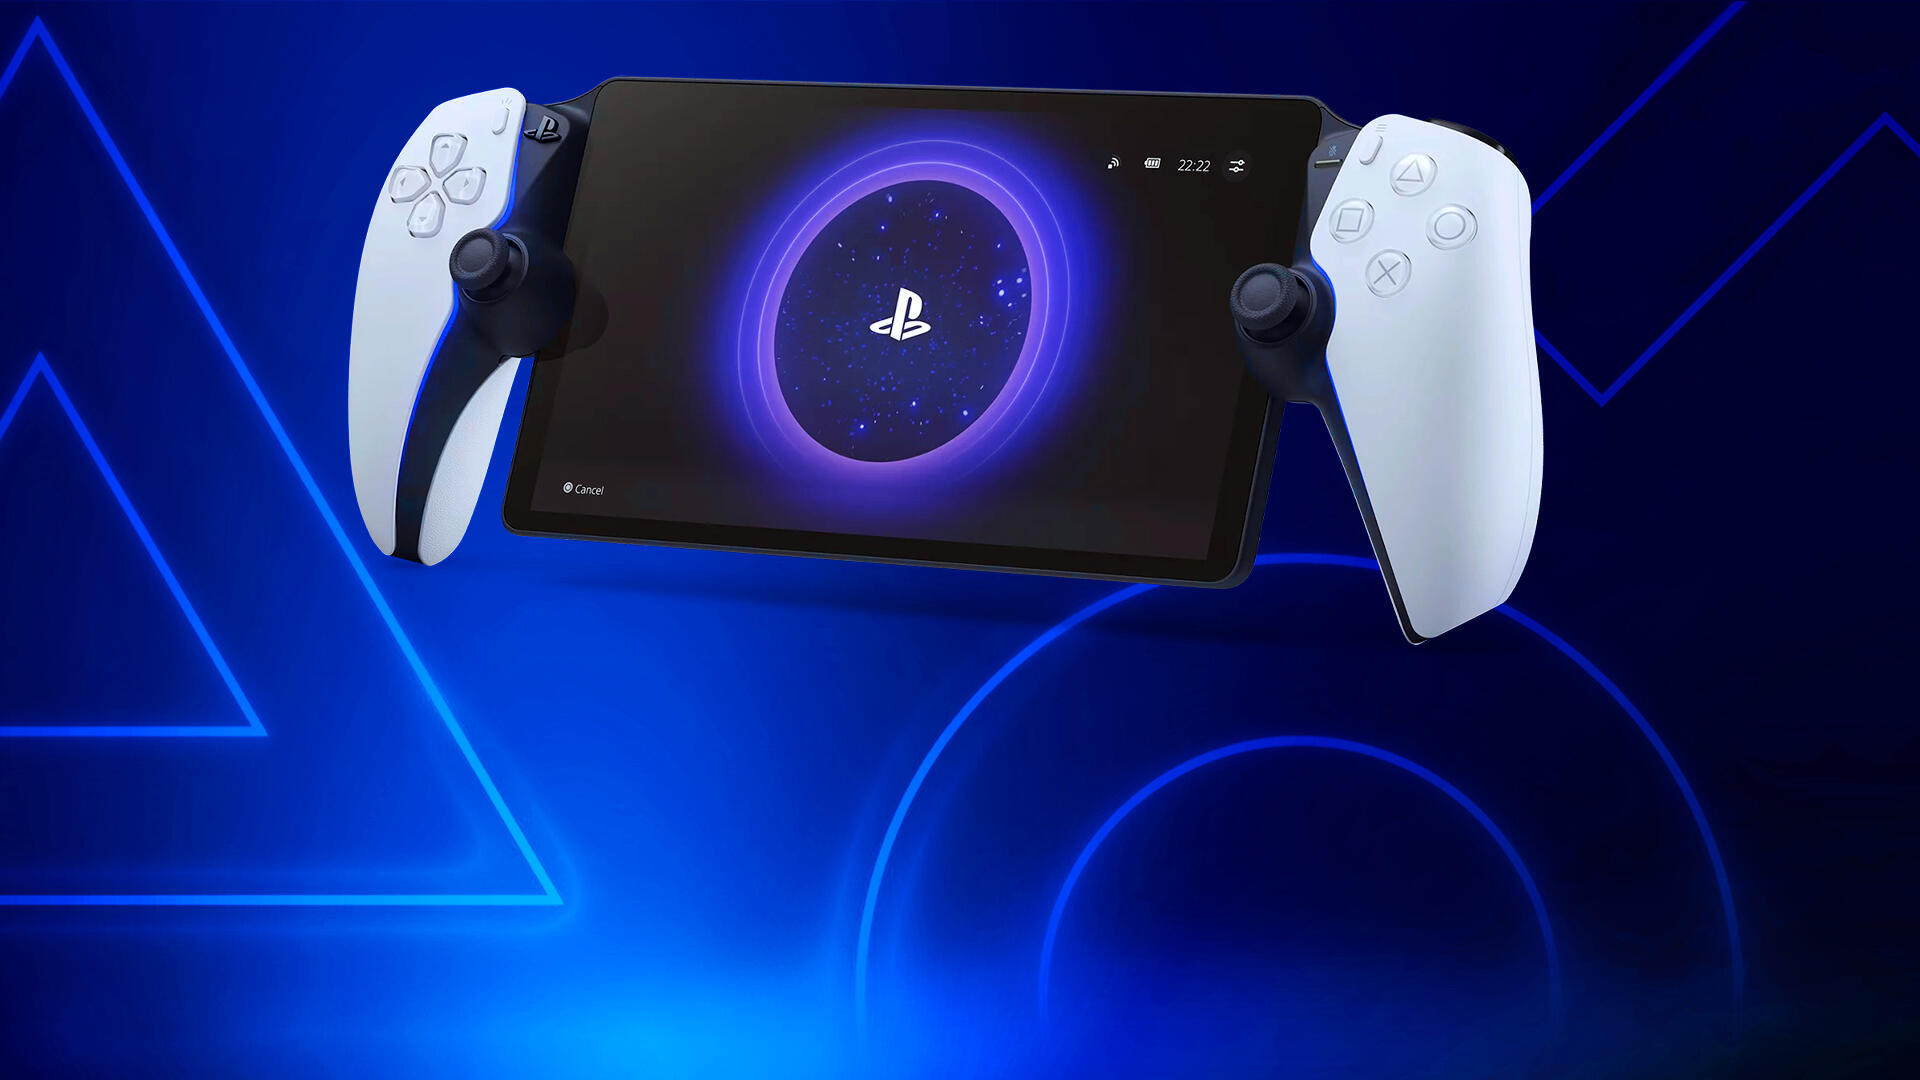 Nueva consola portátil Sony diseñada para juego remoto de PS5